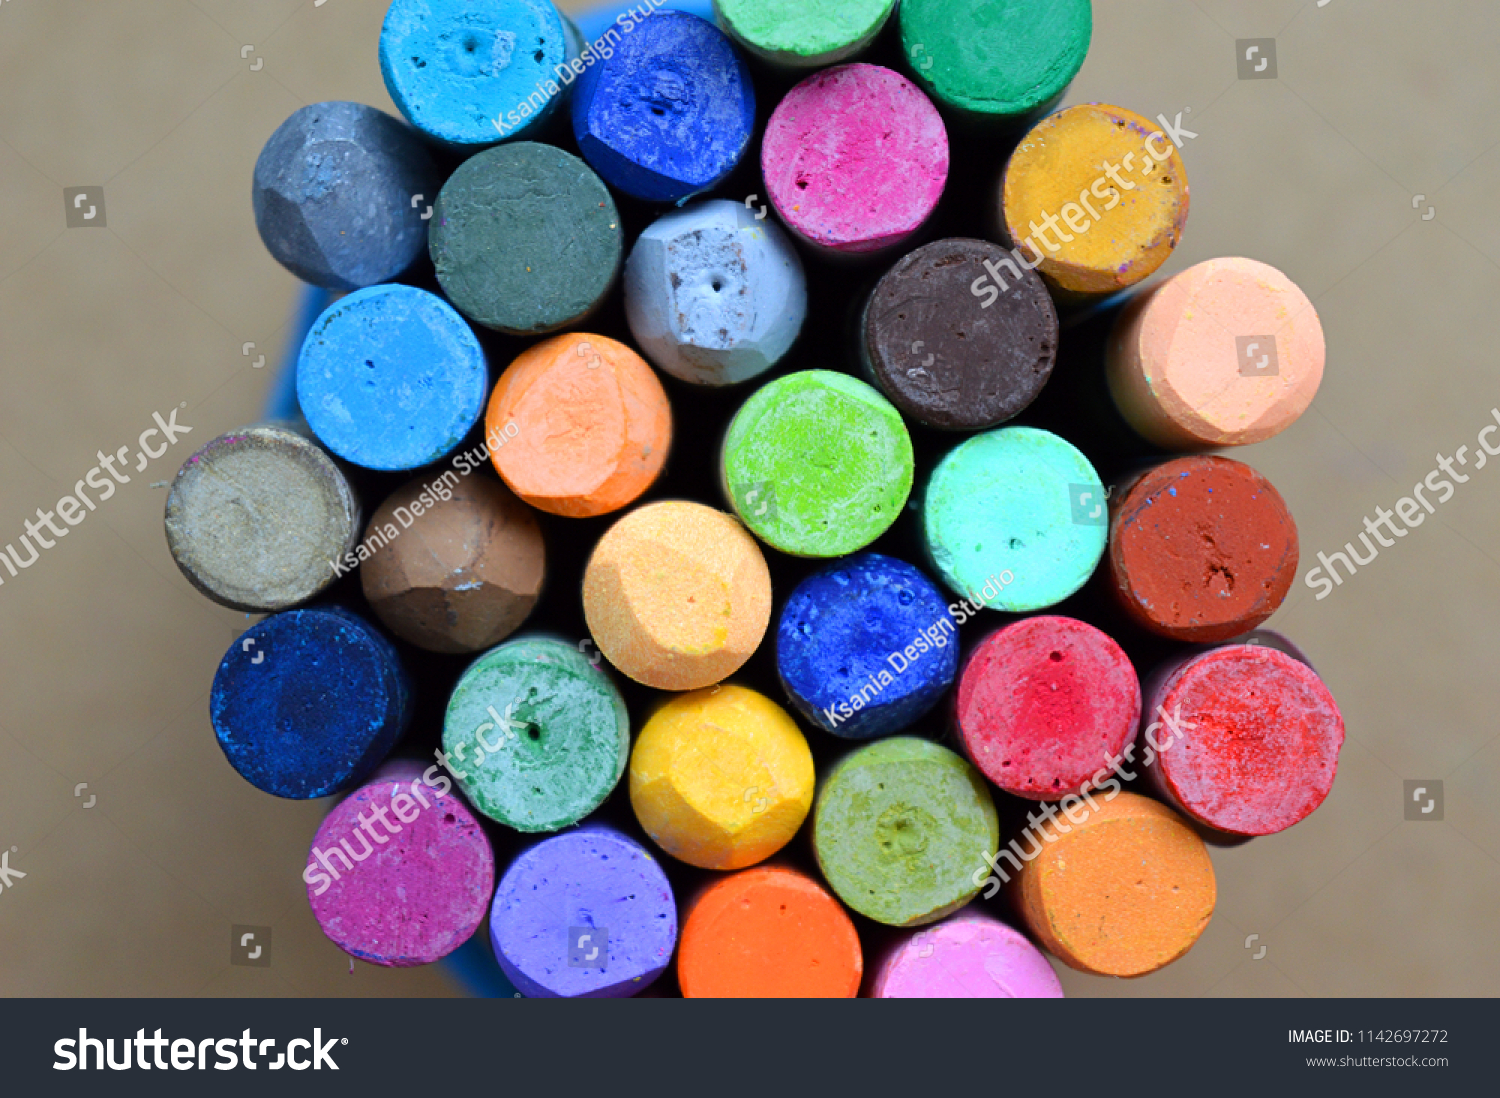 Pastels. Oil pastels. Colorful pastels. Art supplies. Child play. Education. Art studio. #1142697272